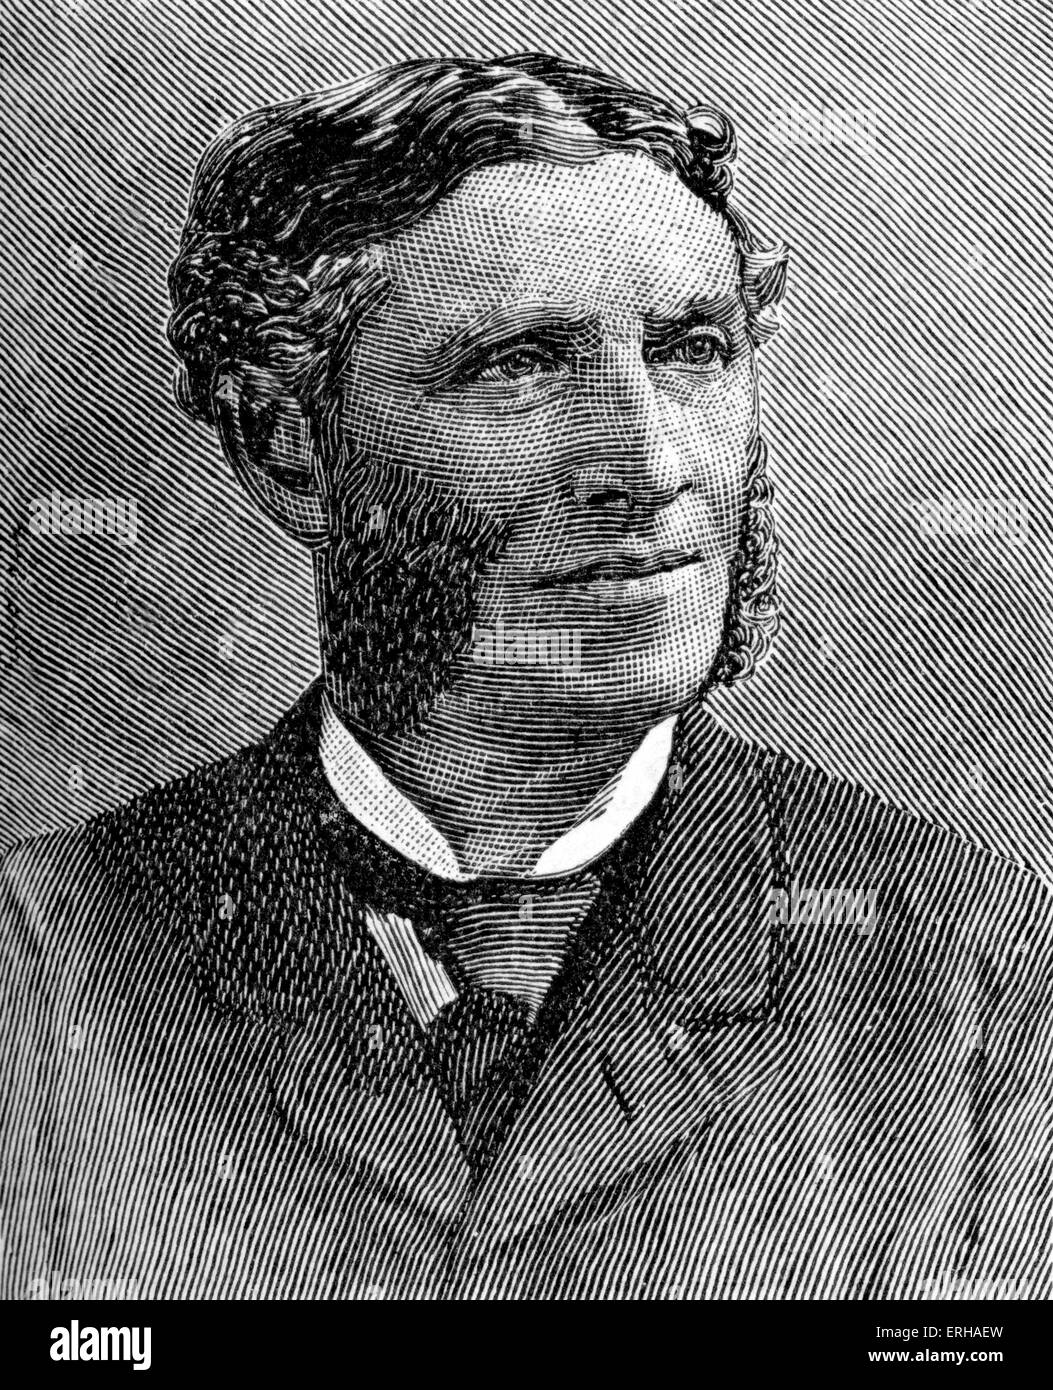 Matthew Arnold (1822 - 1888). Un poeta britannico e critico culturale. Illustrazione dopo una fotografia da Sarony. Foto Stock